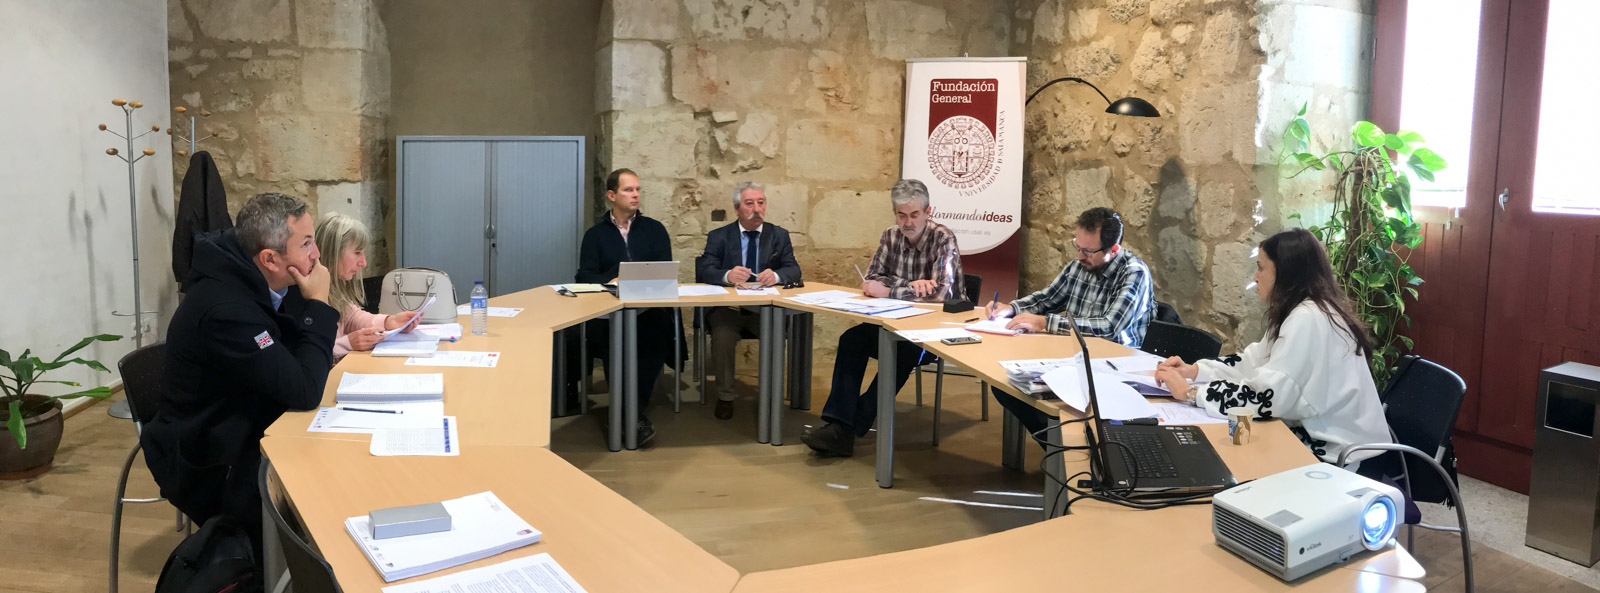 La Fundación General de la Universidad de Salamanca organiza la reunión hispanolusa sobre emprendimiento transfronterizo del programa BINSAL EMPRENDE 